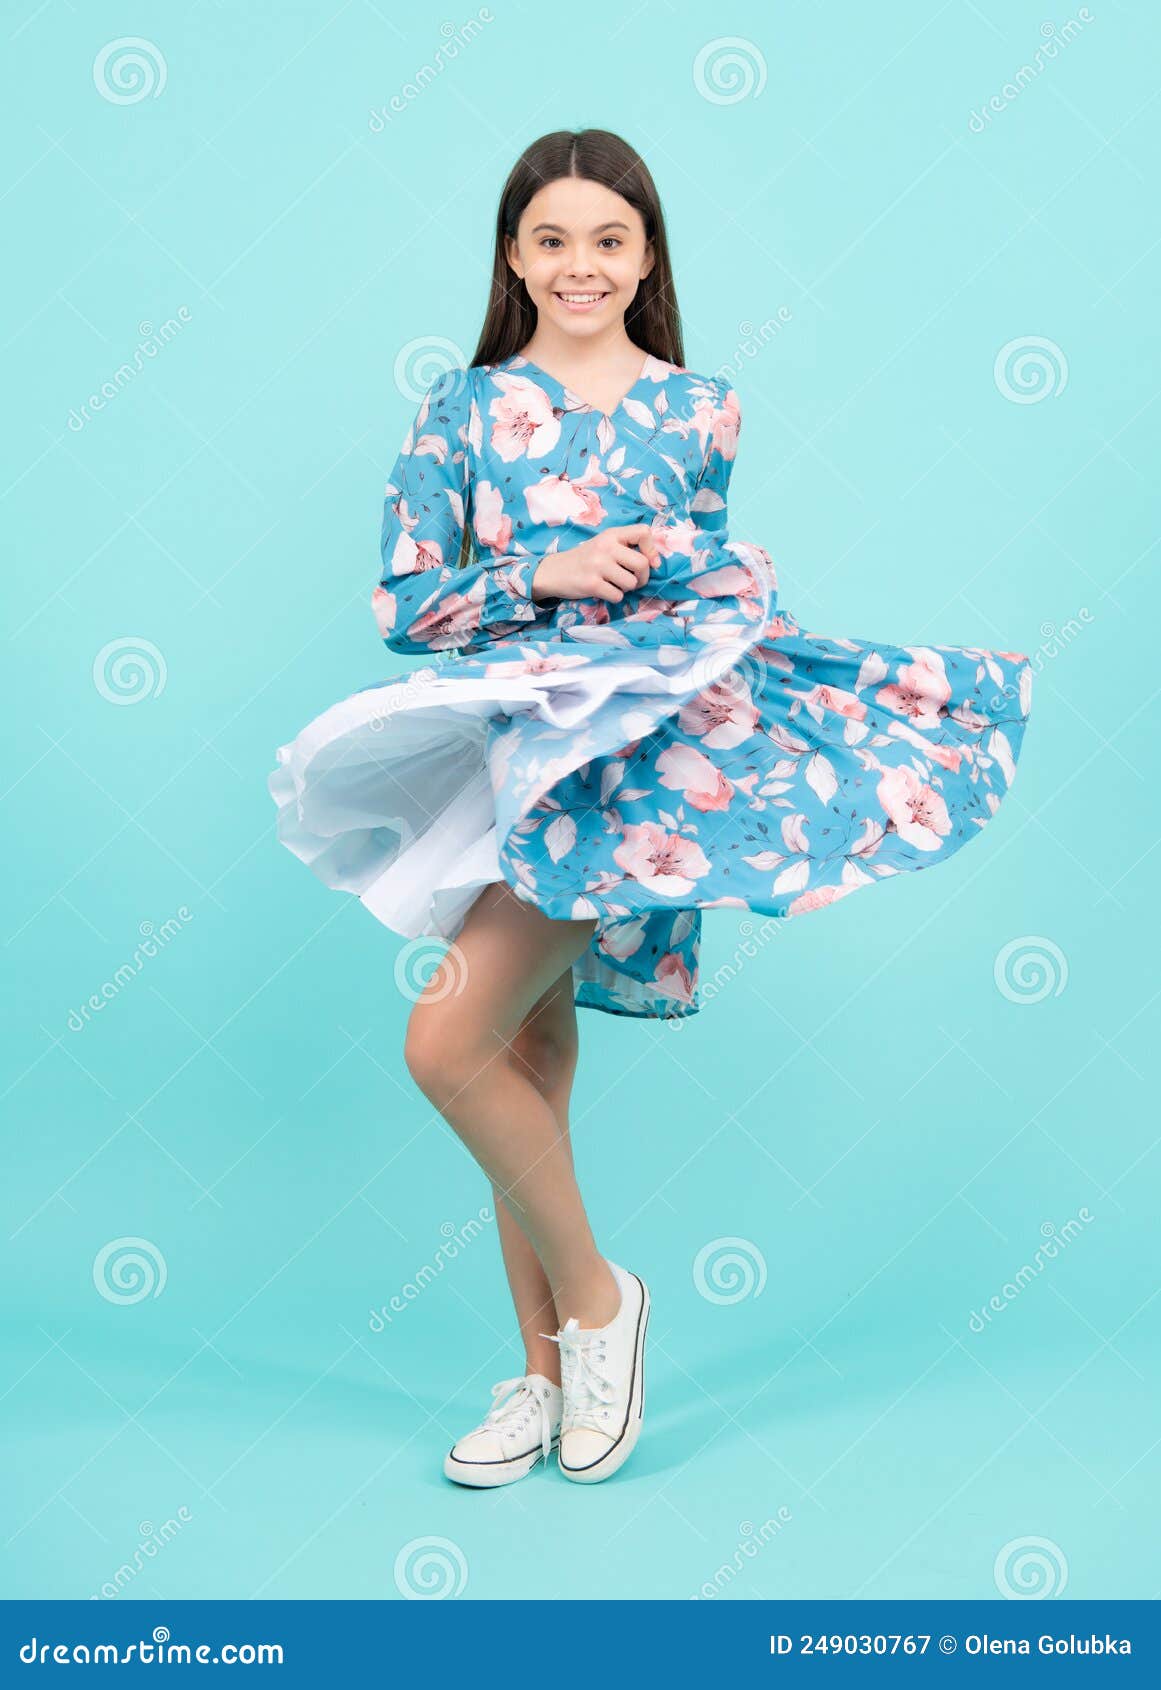 Imagen completa de una mujer joven con ropa elegante e informal saltando  divirtiéndose contra el fondo azul del estudio concepto de emociones  humanas anuncio de estilo de vida de moda juvenil